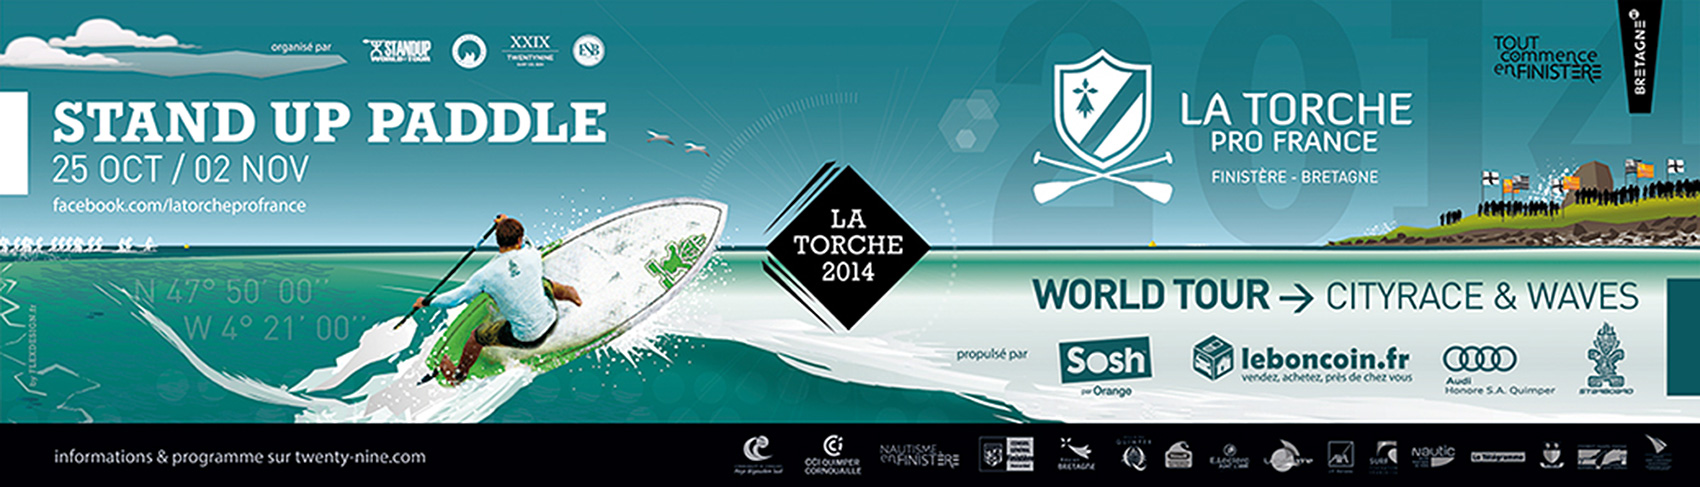 création banderole évènementiel LA TORCHE PRO FRANCE 2014